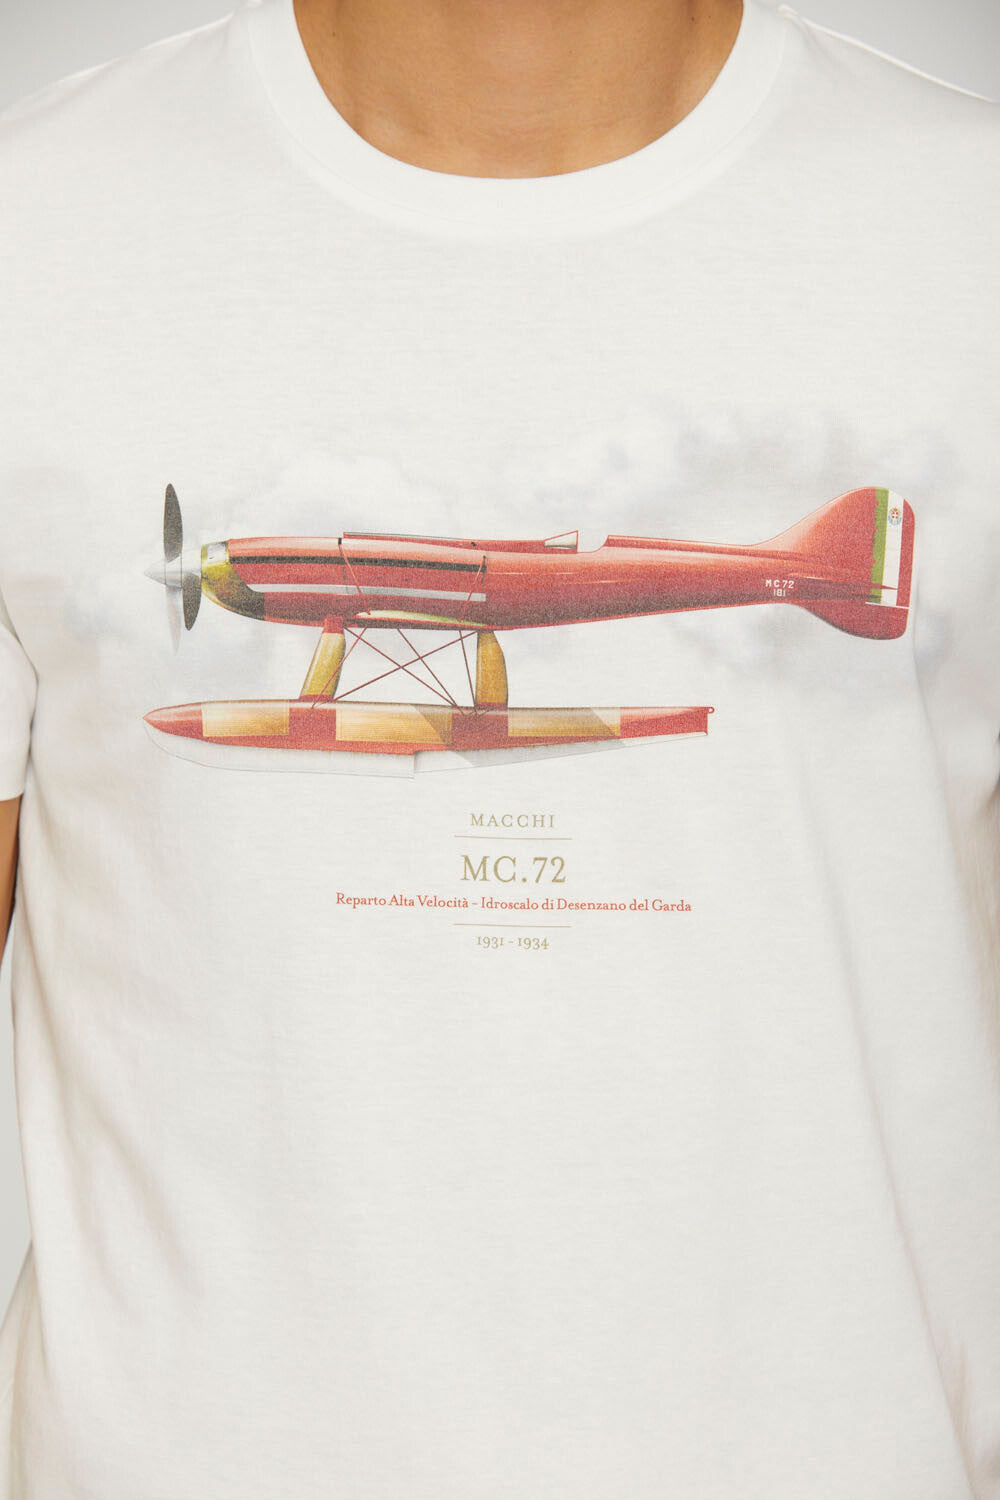 Musam Macchi MC.72 t-shirt